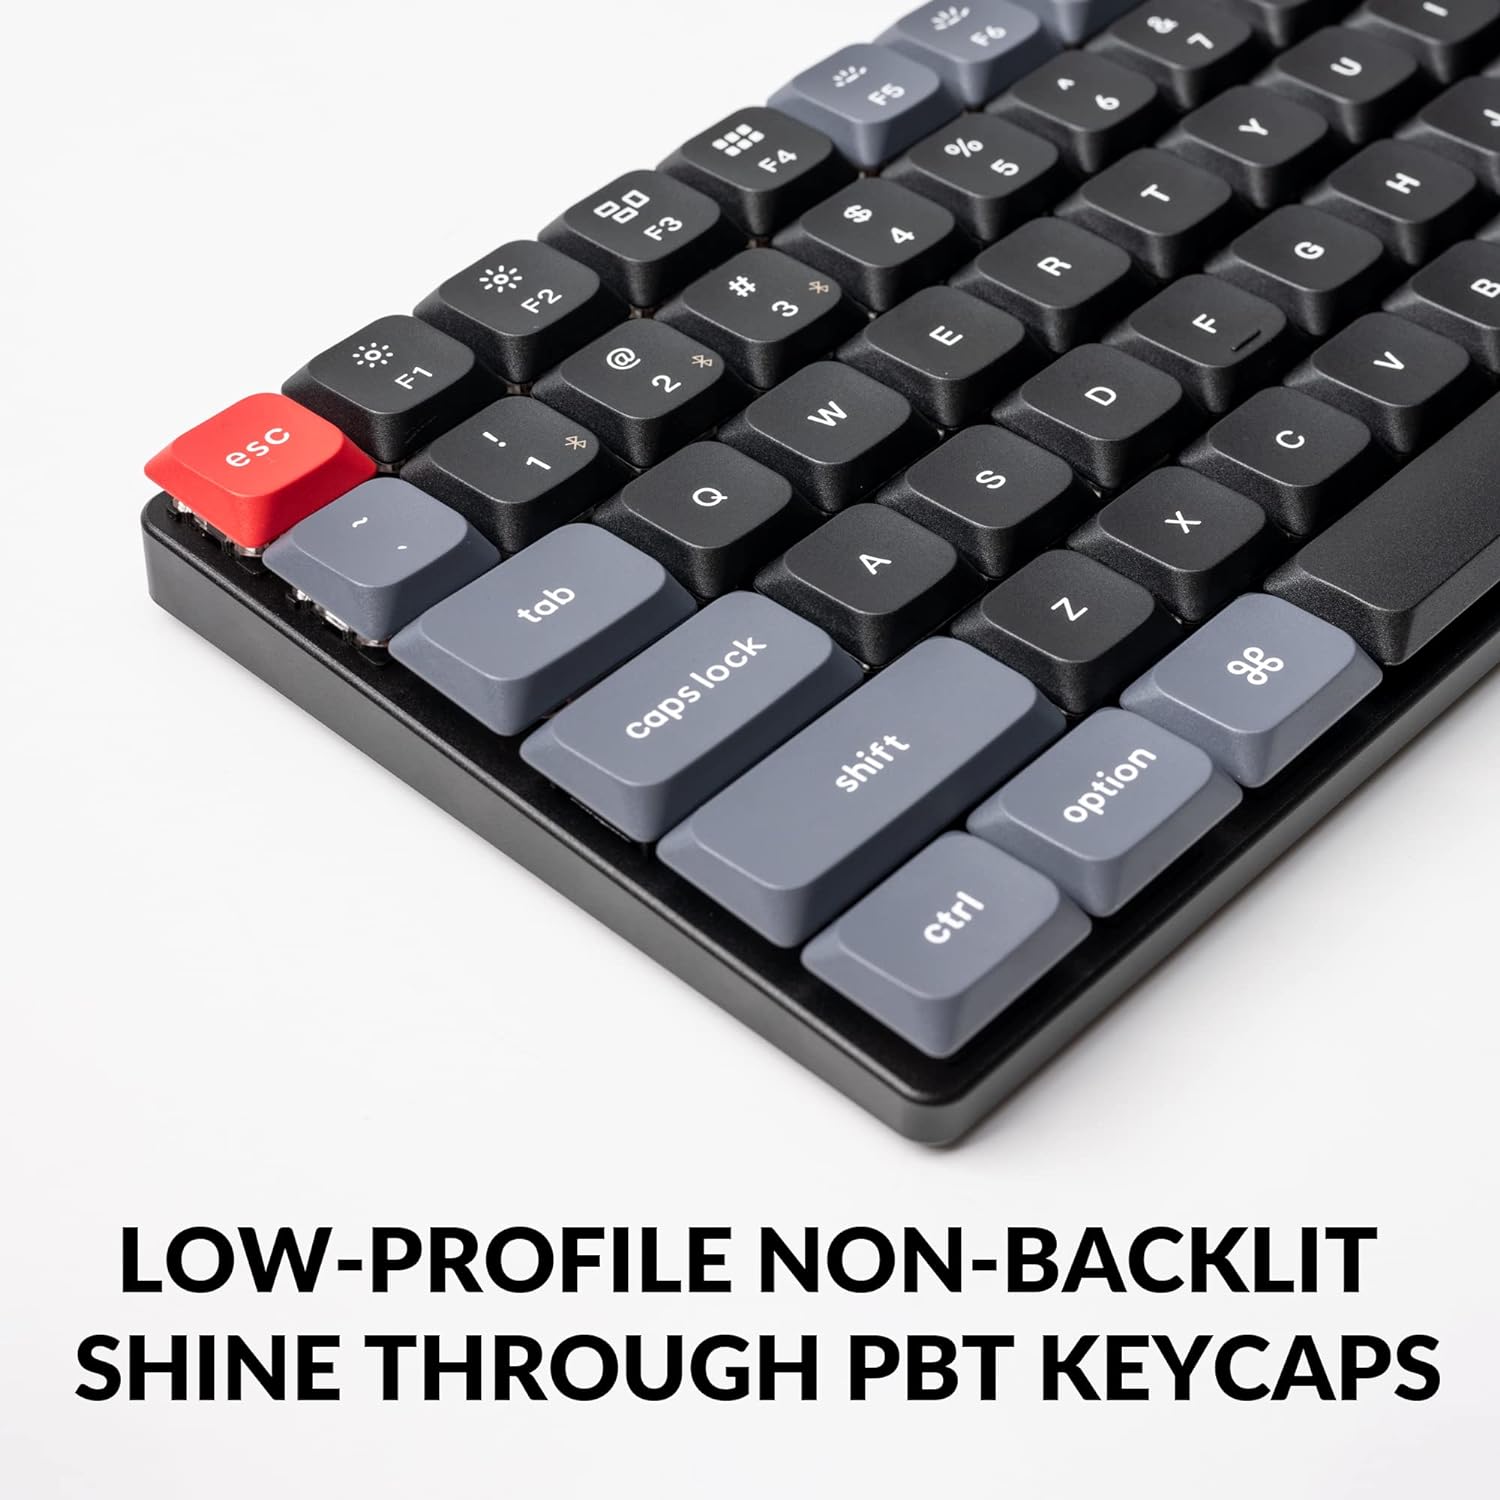 Pro Wireless Custom Mechanical Keyboard